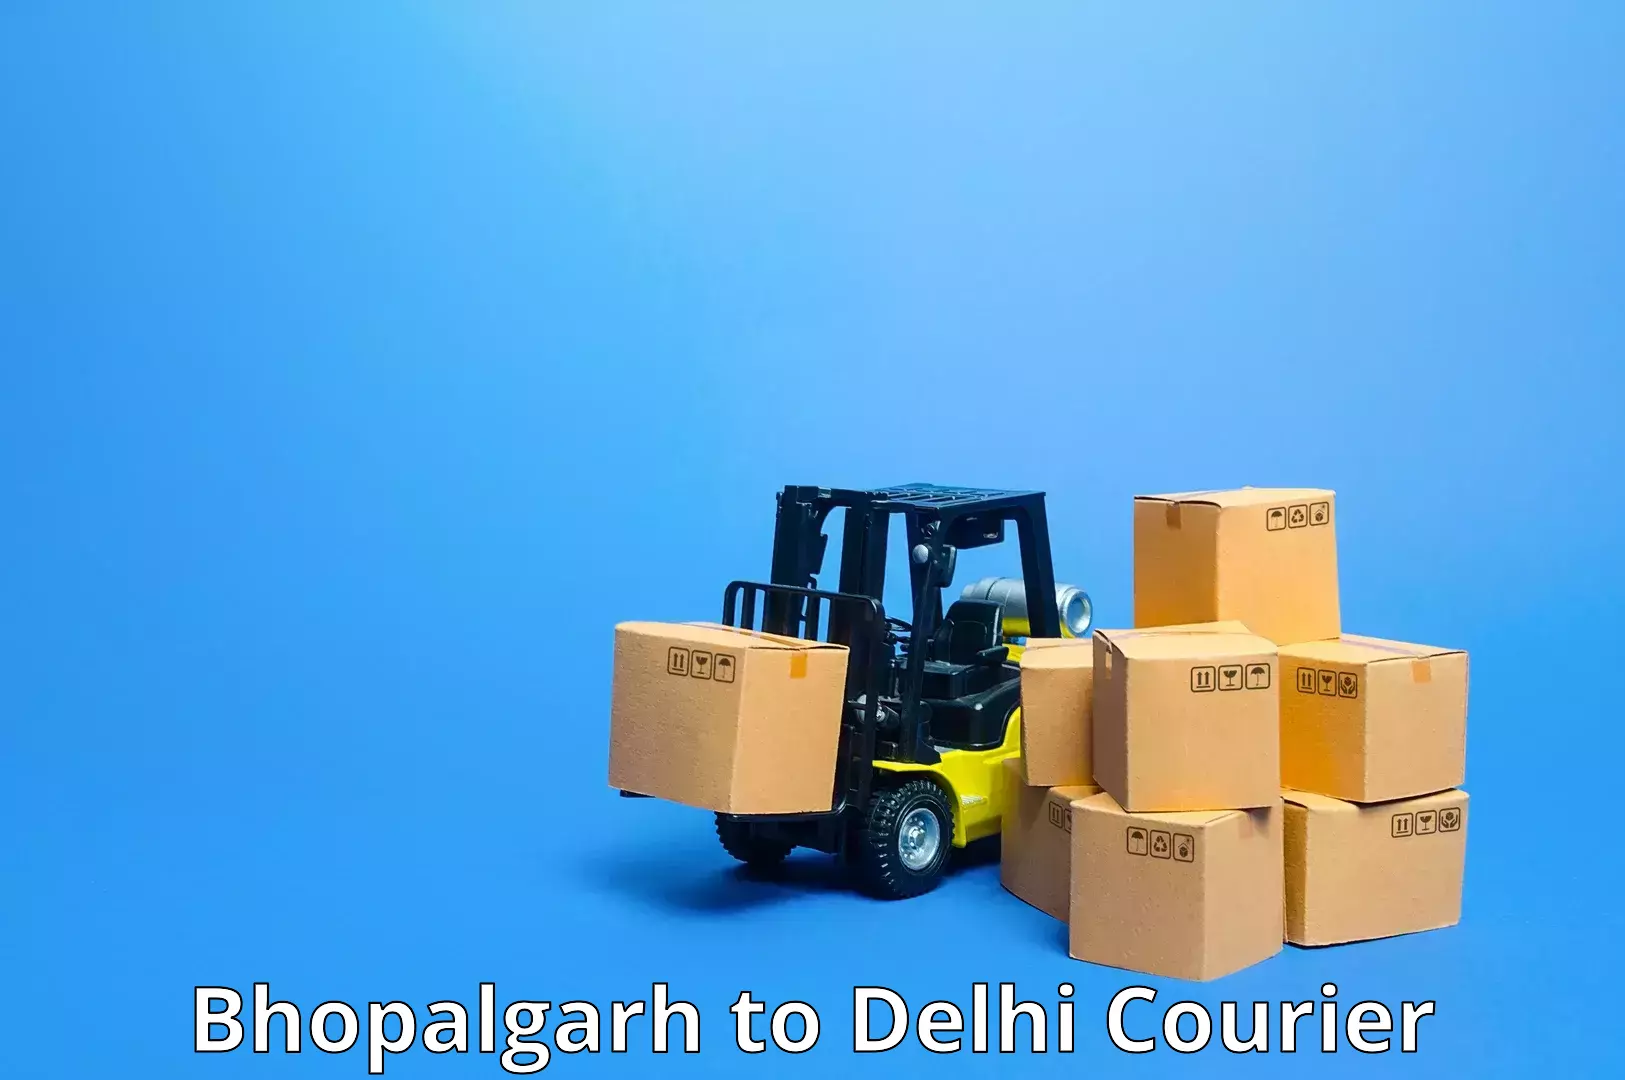 Courier service innovation Bhopalgarh to Jamia Millia Islamia New Delhi